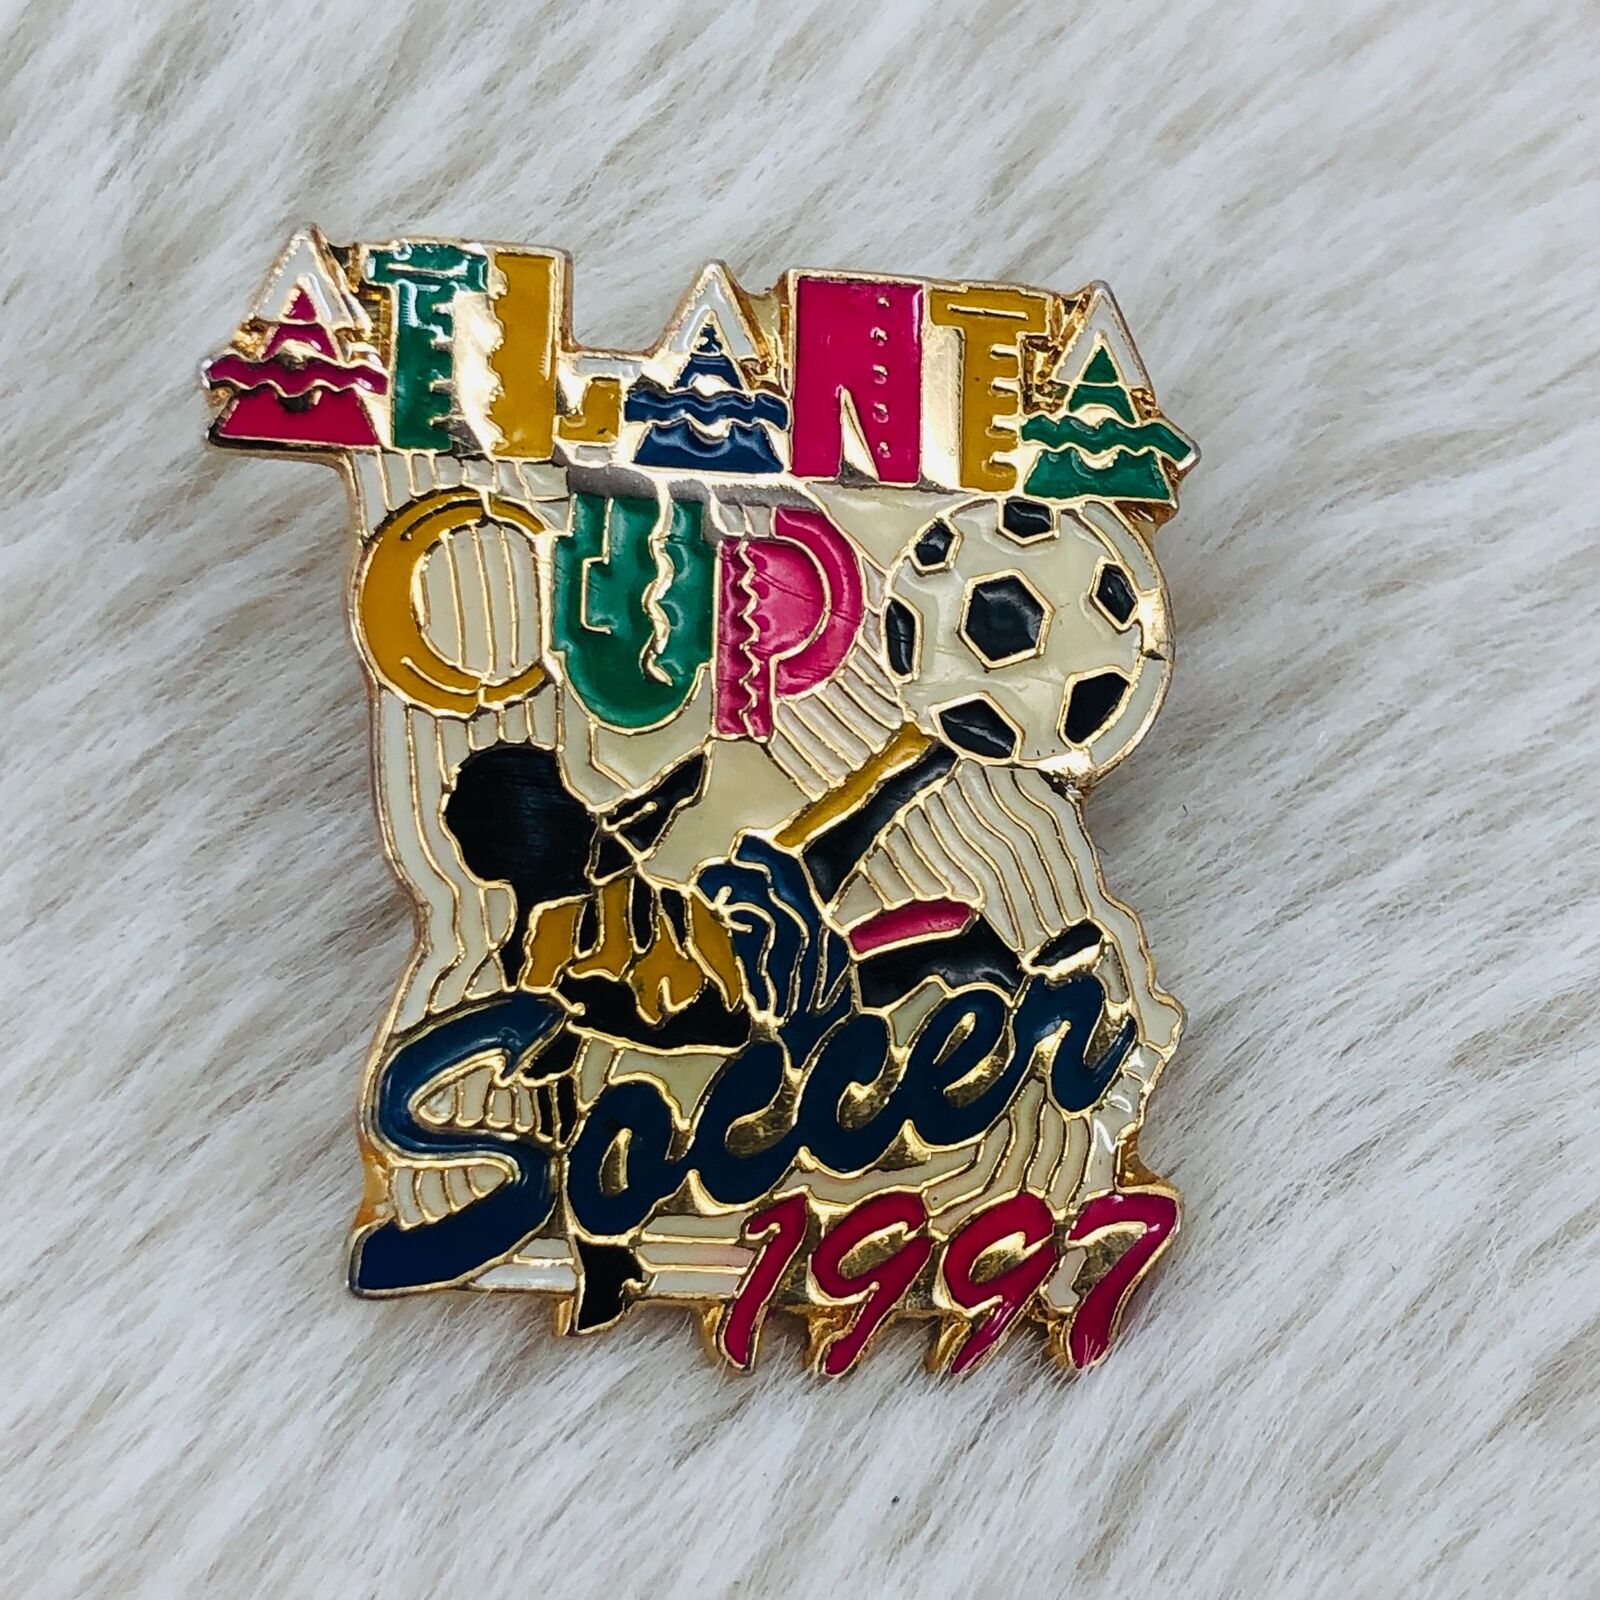 Vtg 1997 Atlanta Cup Youth Soccer Tournament Souvenir Enamel Lapel Bag Pin